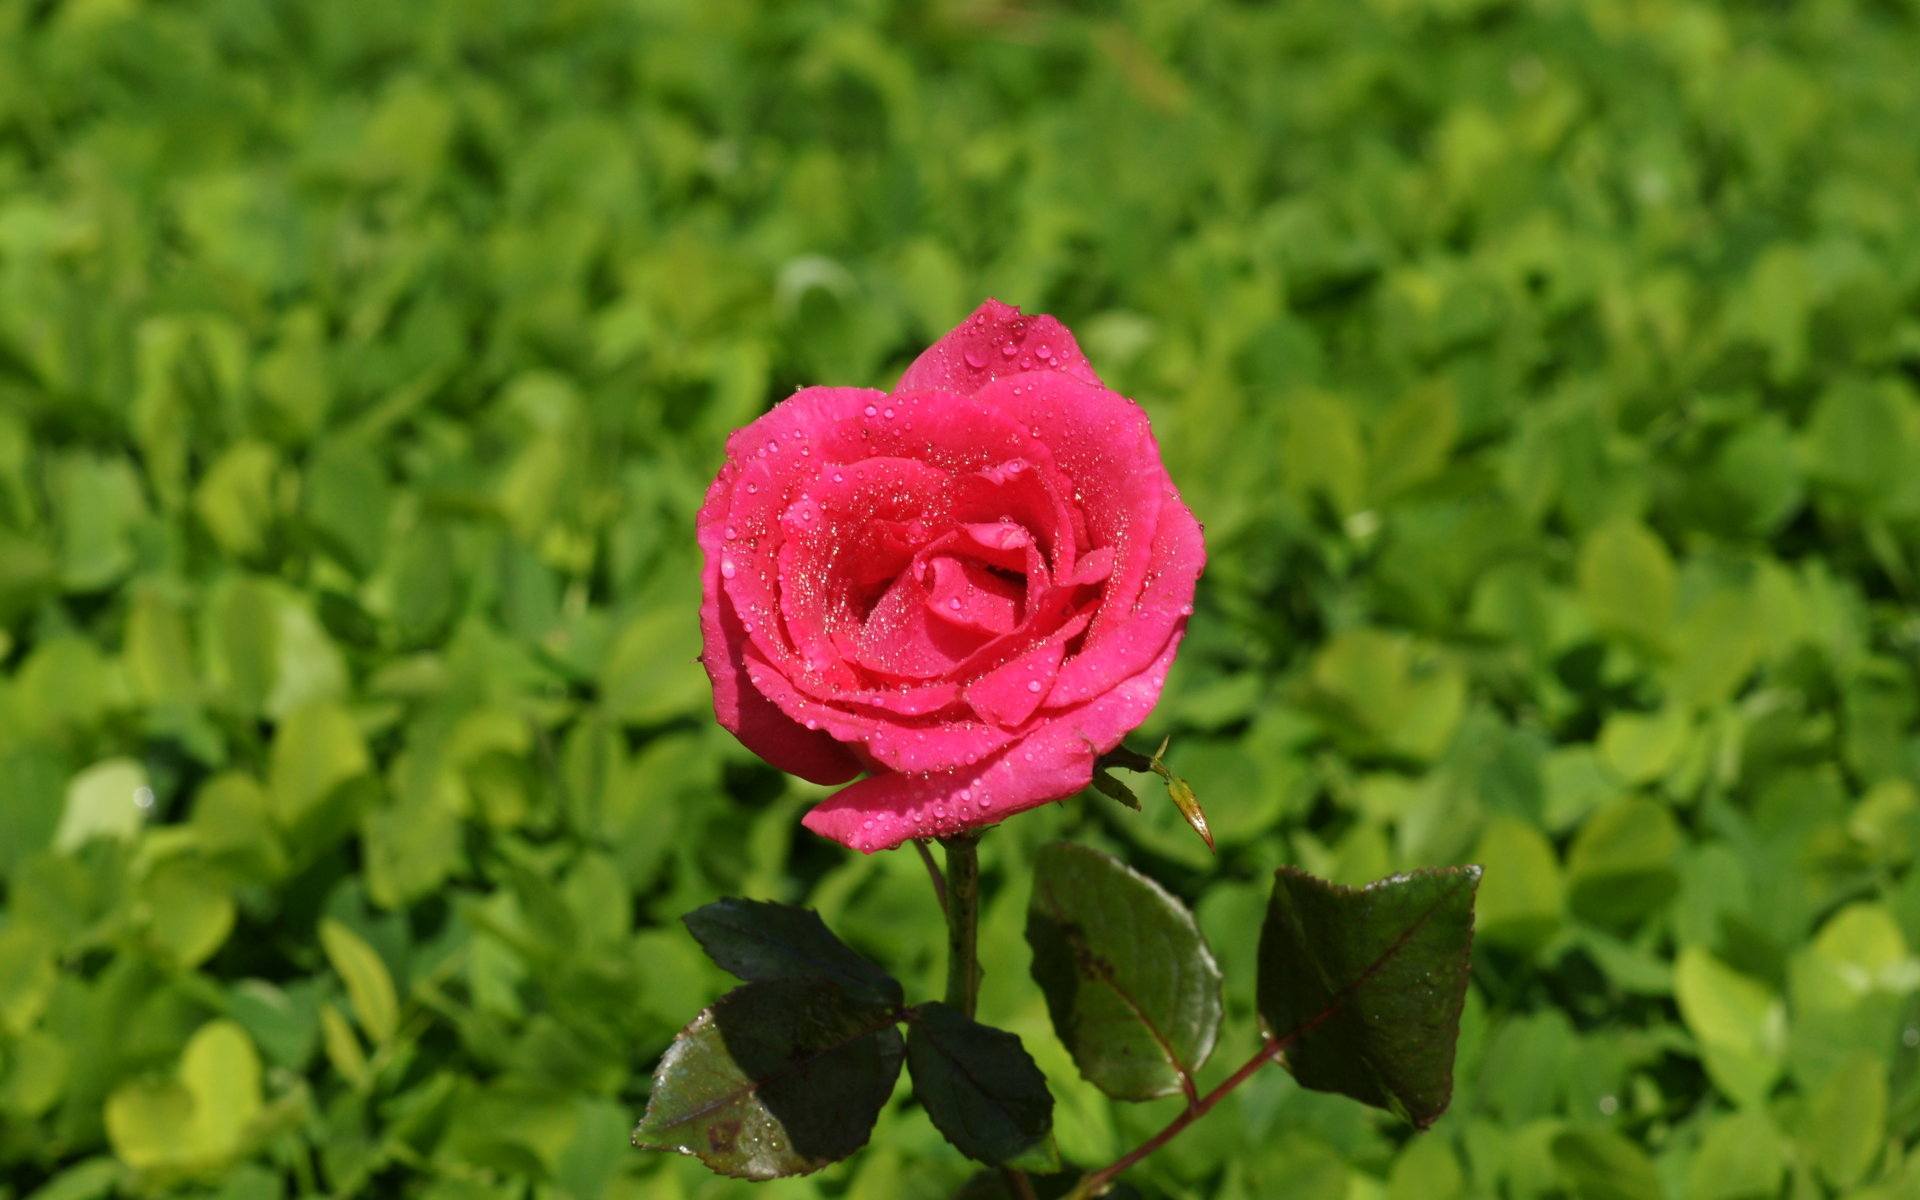 rosentapete rosentapete,blume,blühende pflanze,blütenblatt,gartenrosen,rose